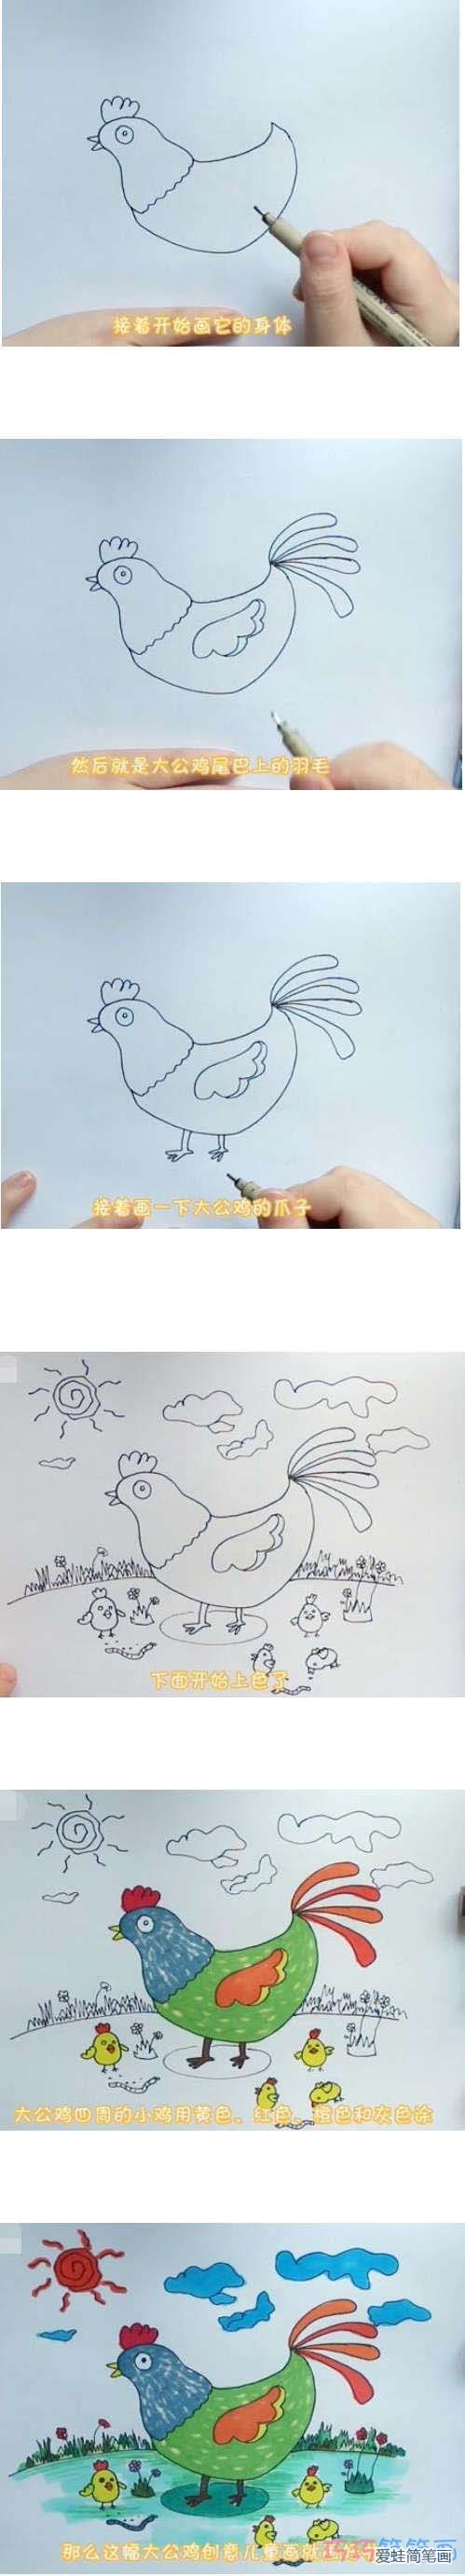 教你如何画大公鸡简笔画